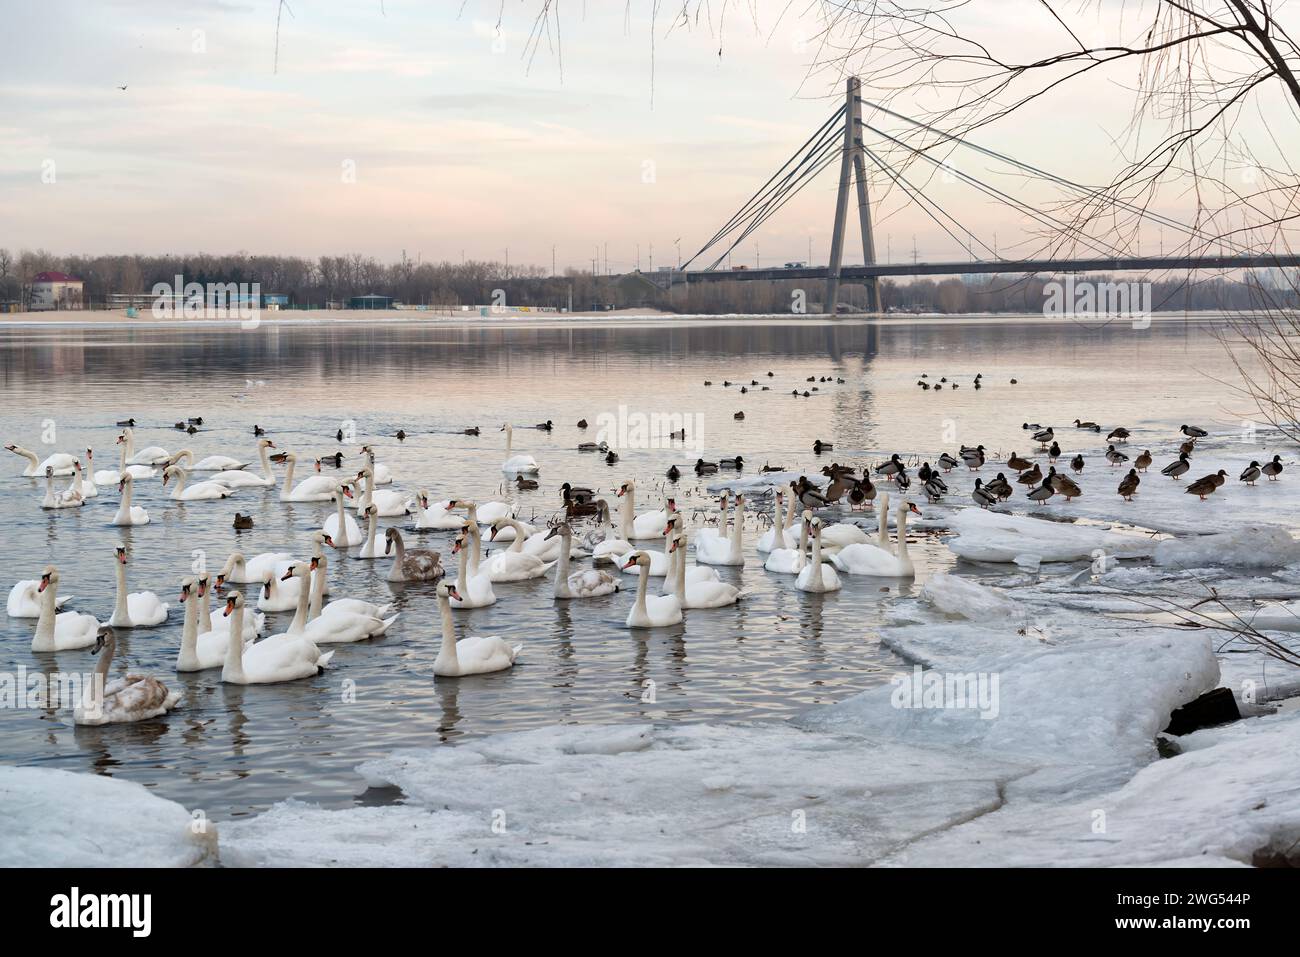 Troupeau de cygnes trompettistes blancs sur la rivière Dnipro à Kiev, Ukraine. Cygnes blancs flottant entre la glace et la neige en hiver Banque D'Images